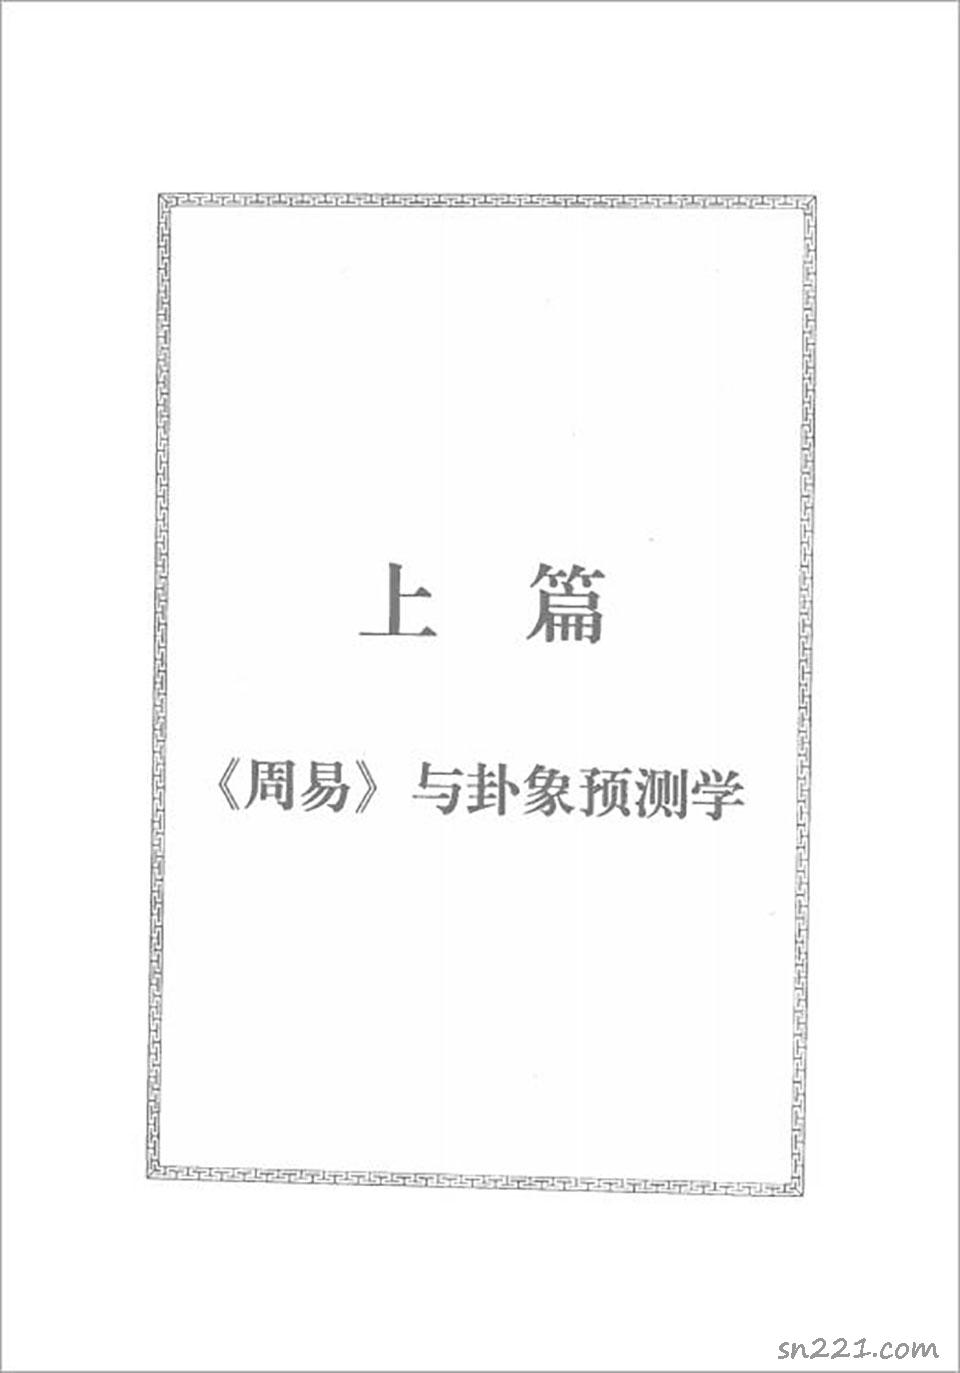 邵偉華-周易預測寶典396頁.pdf